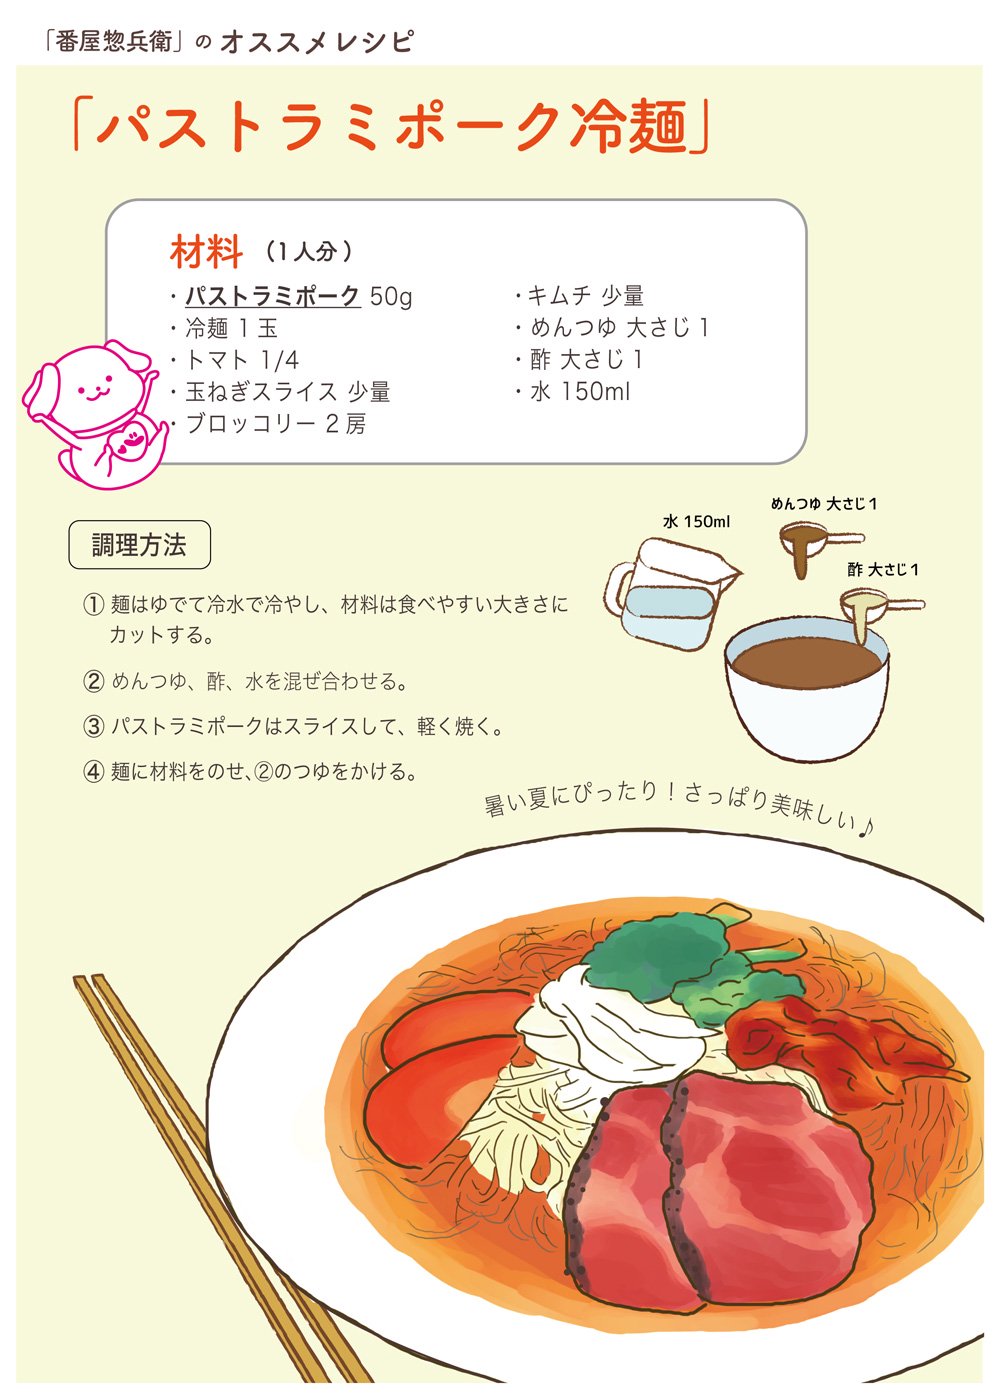 パストラミポーク冷麺